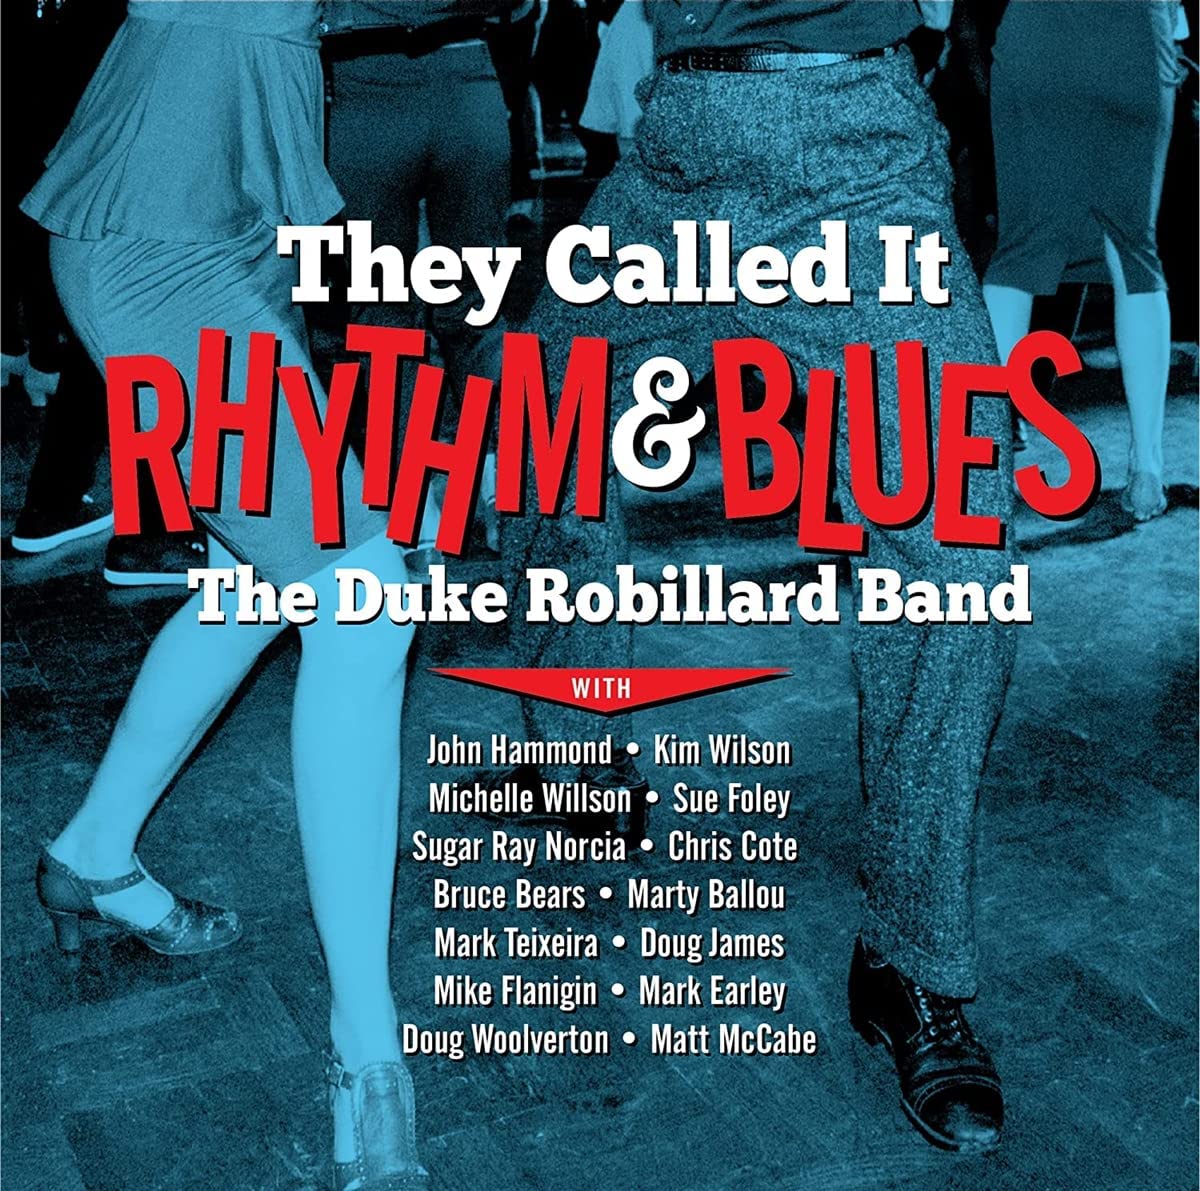 The Duke Robillard Band -They Call It Rythm & Blues